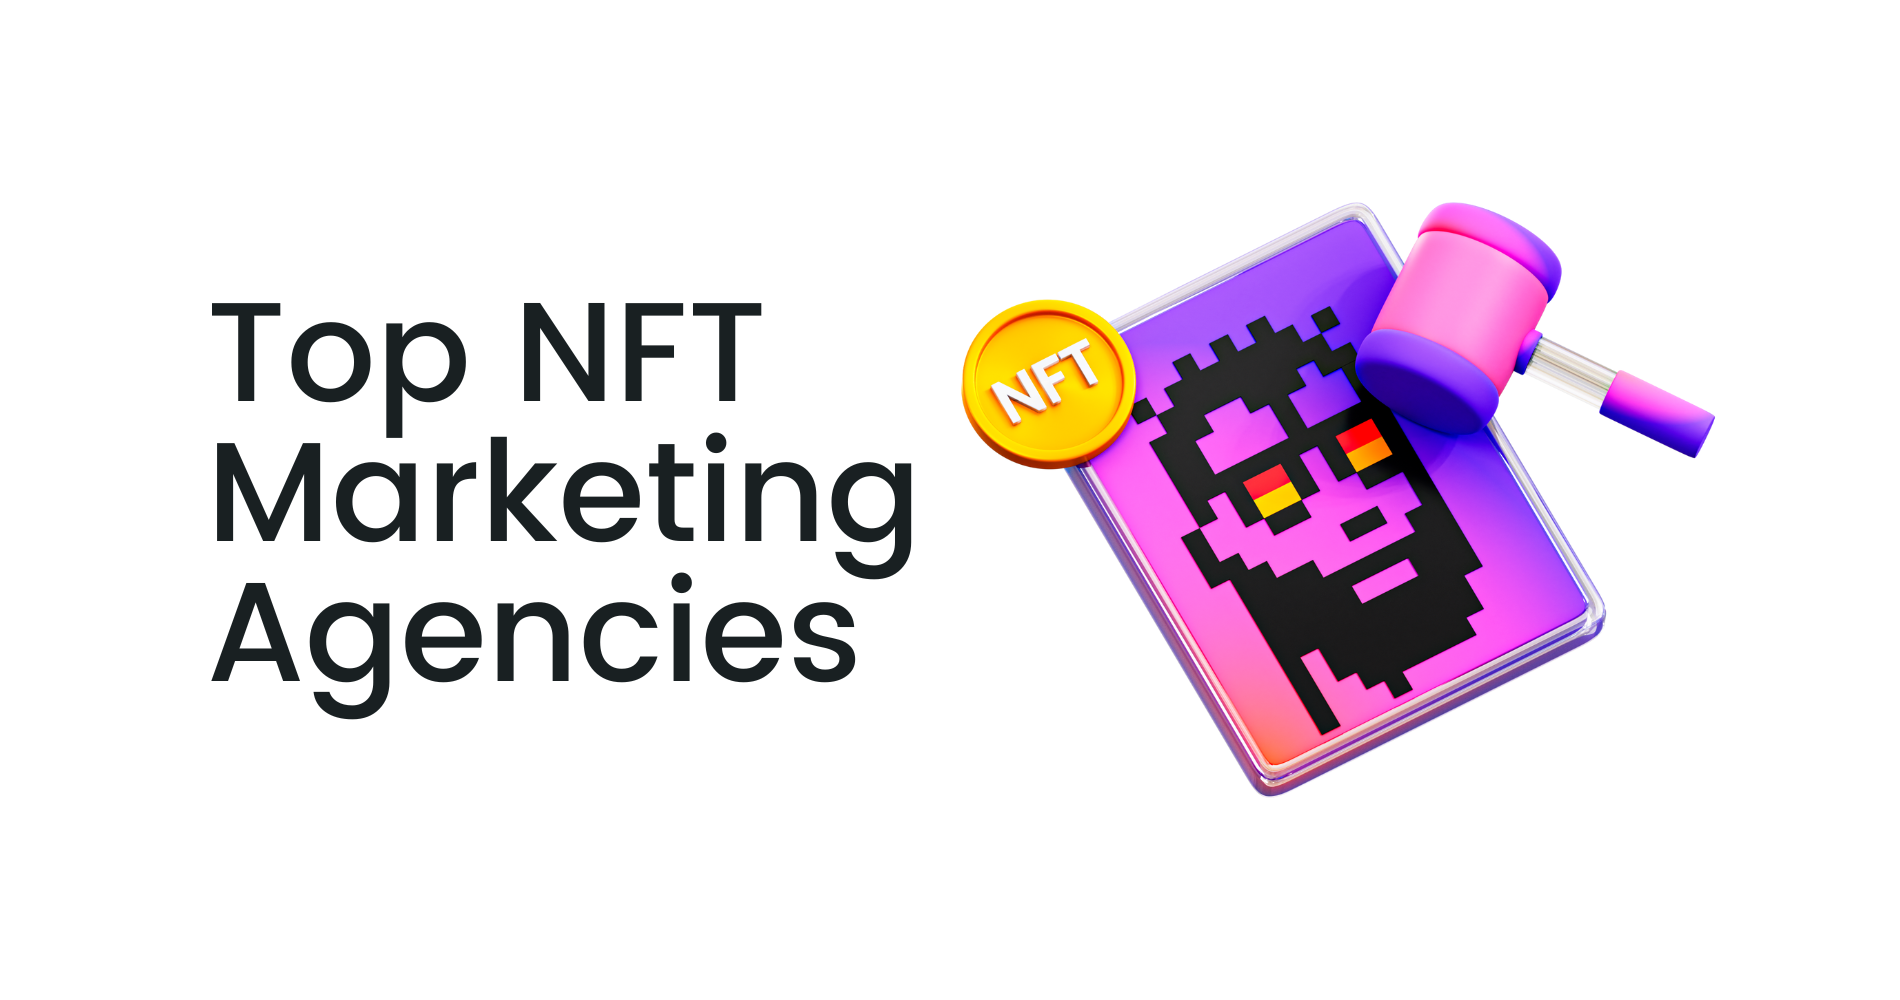 Top NFT Marketing Agencies